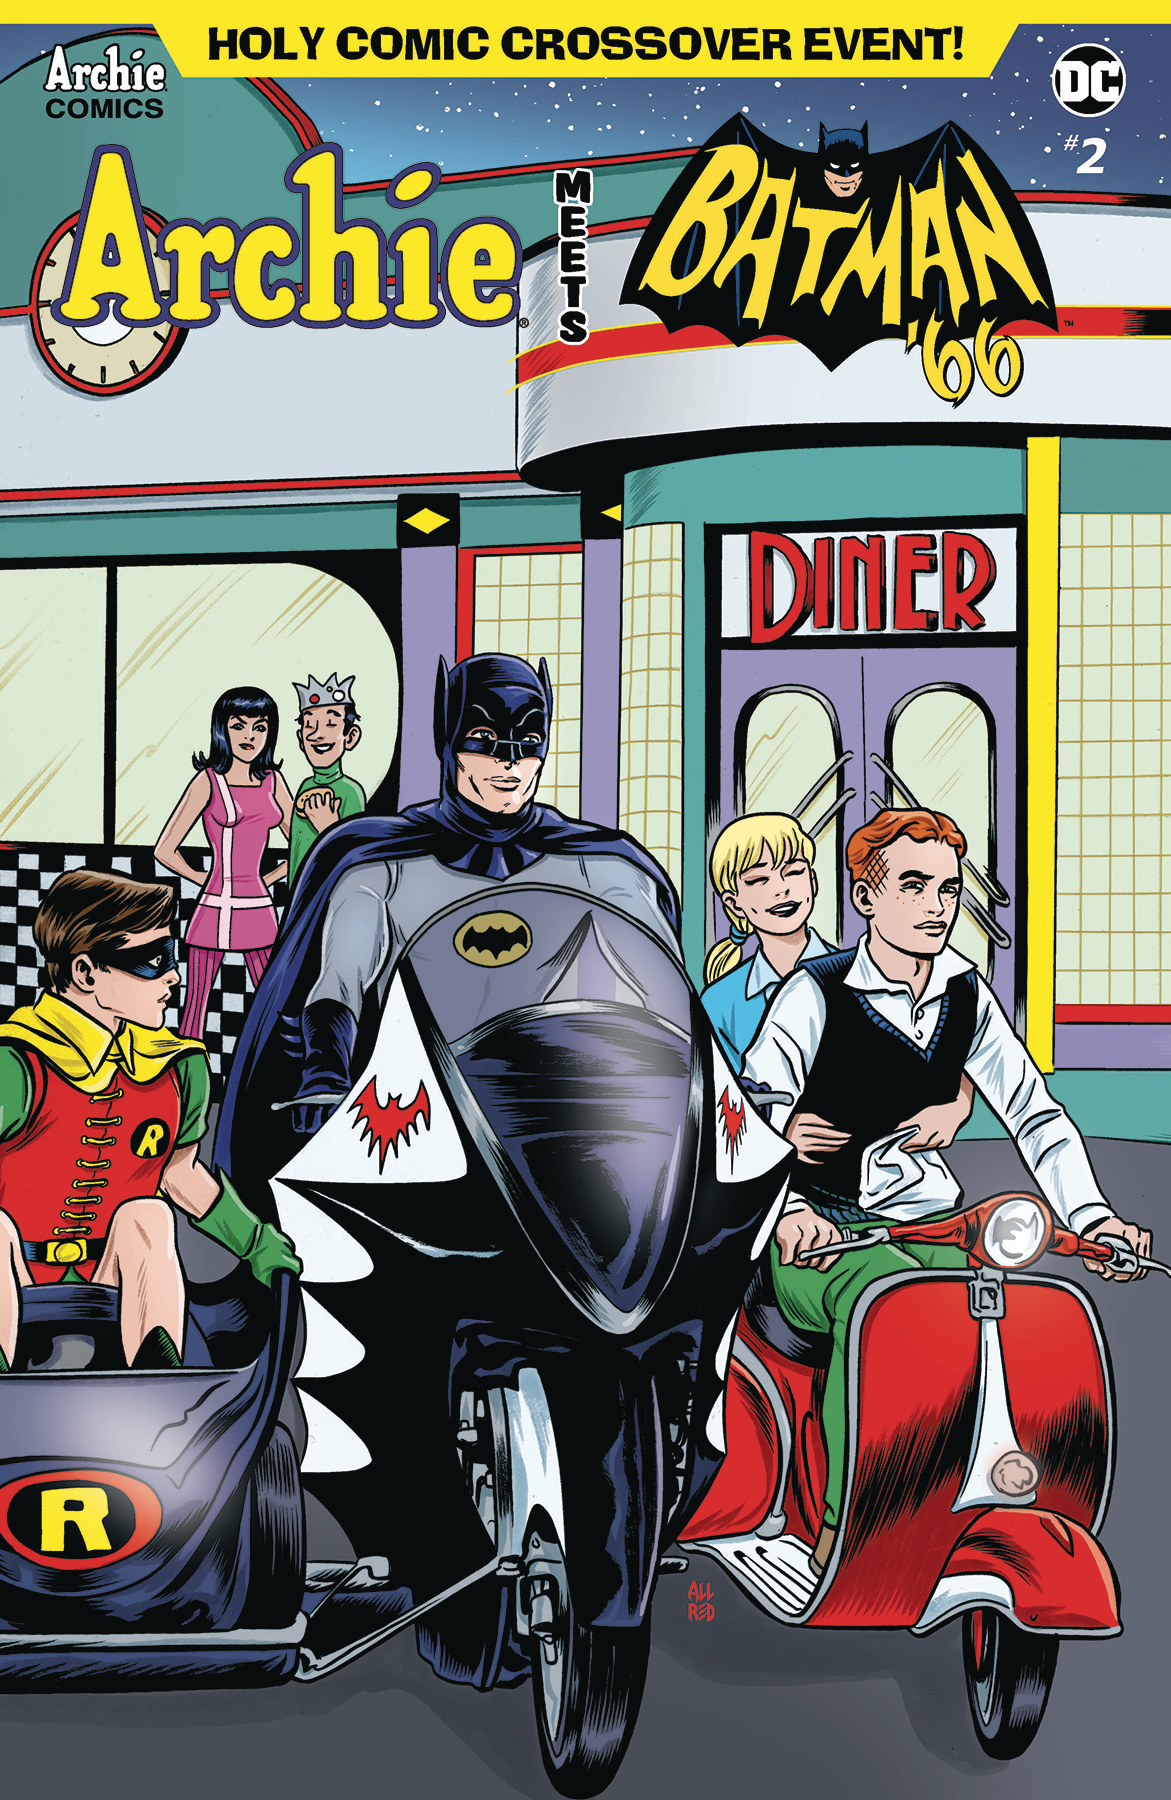 Archie Meets Batman 66 no. 2 (2018 Series)